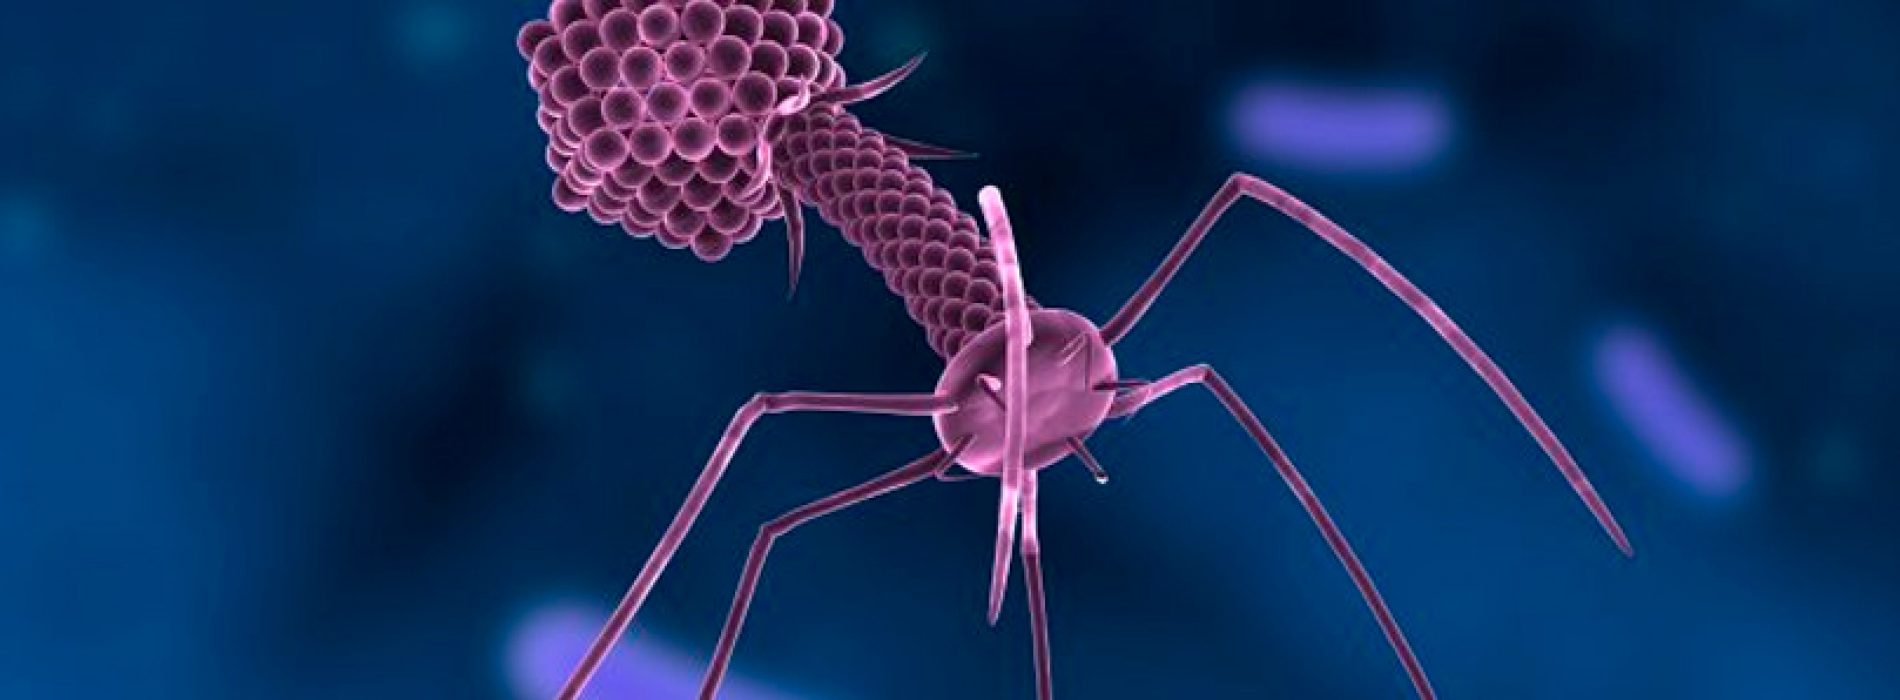 La agencia americana FDA aprueba ensayo clínico con bacteriófago